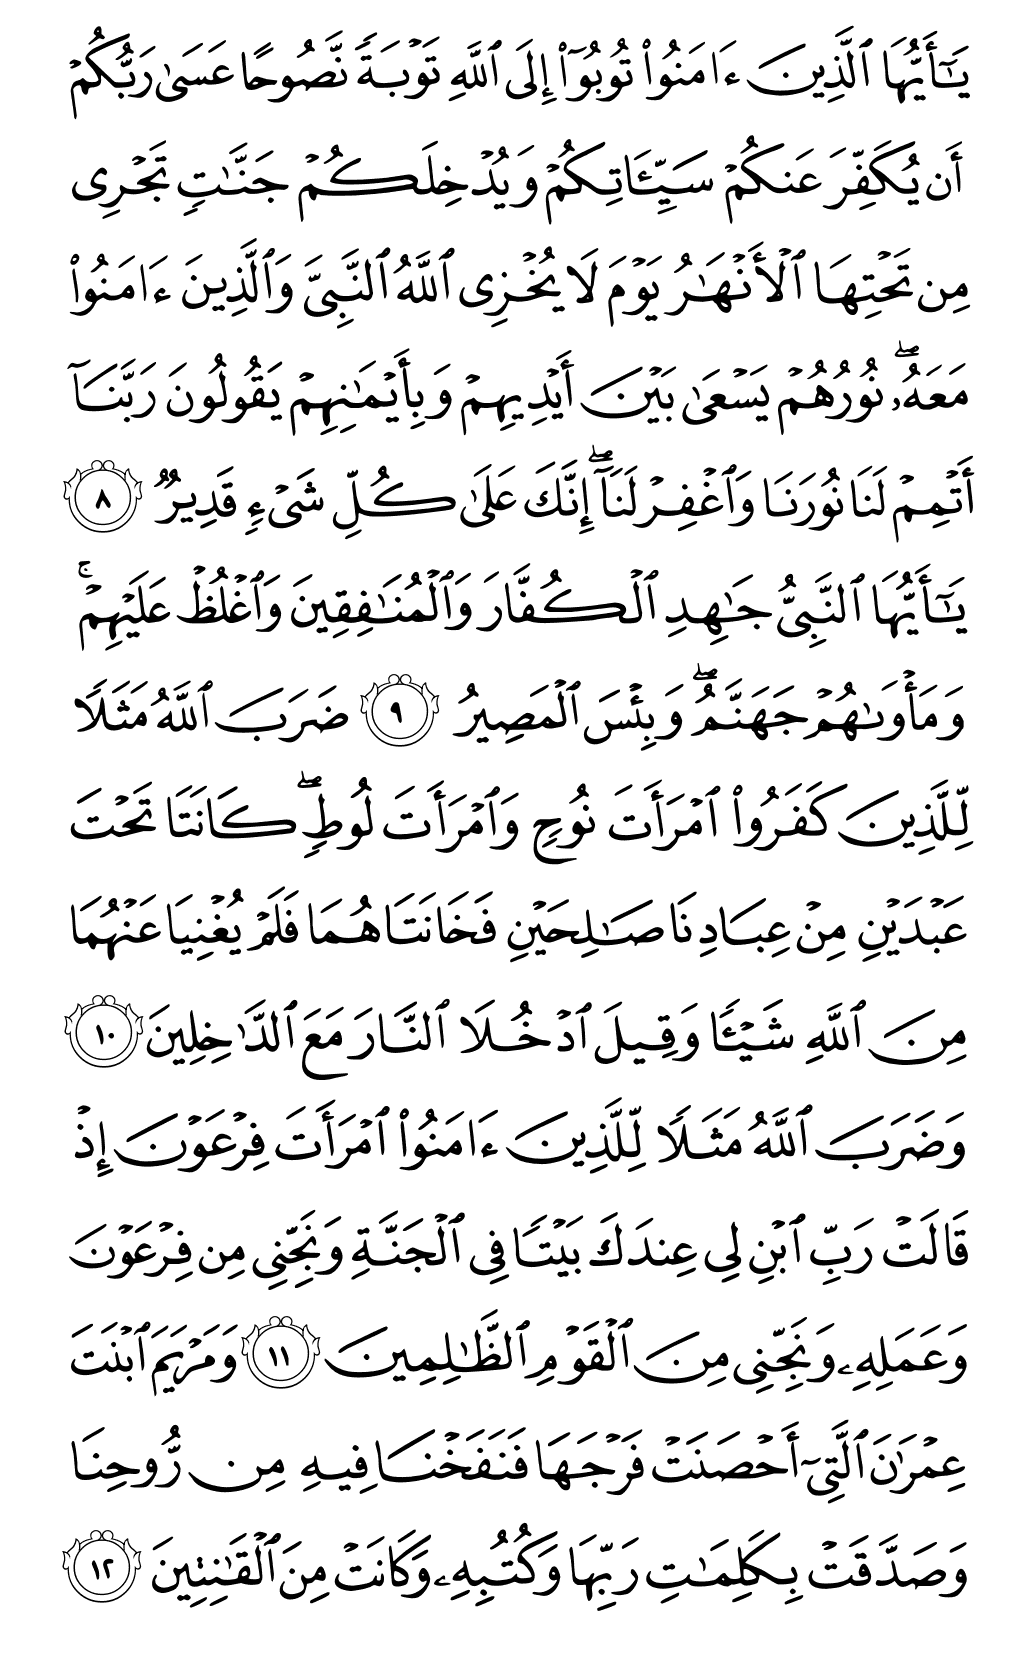 الصفحة رقم 561 من القرآن الكريم